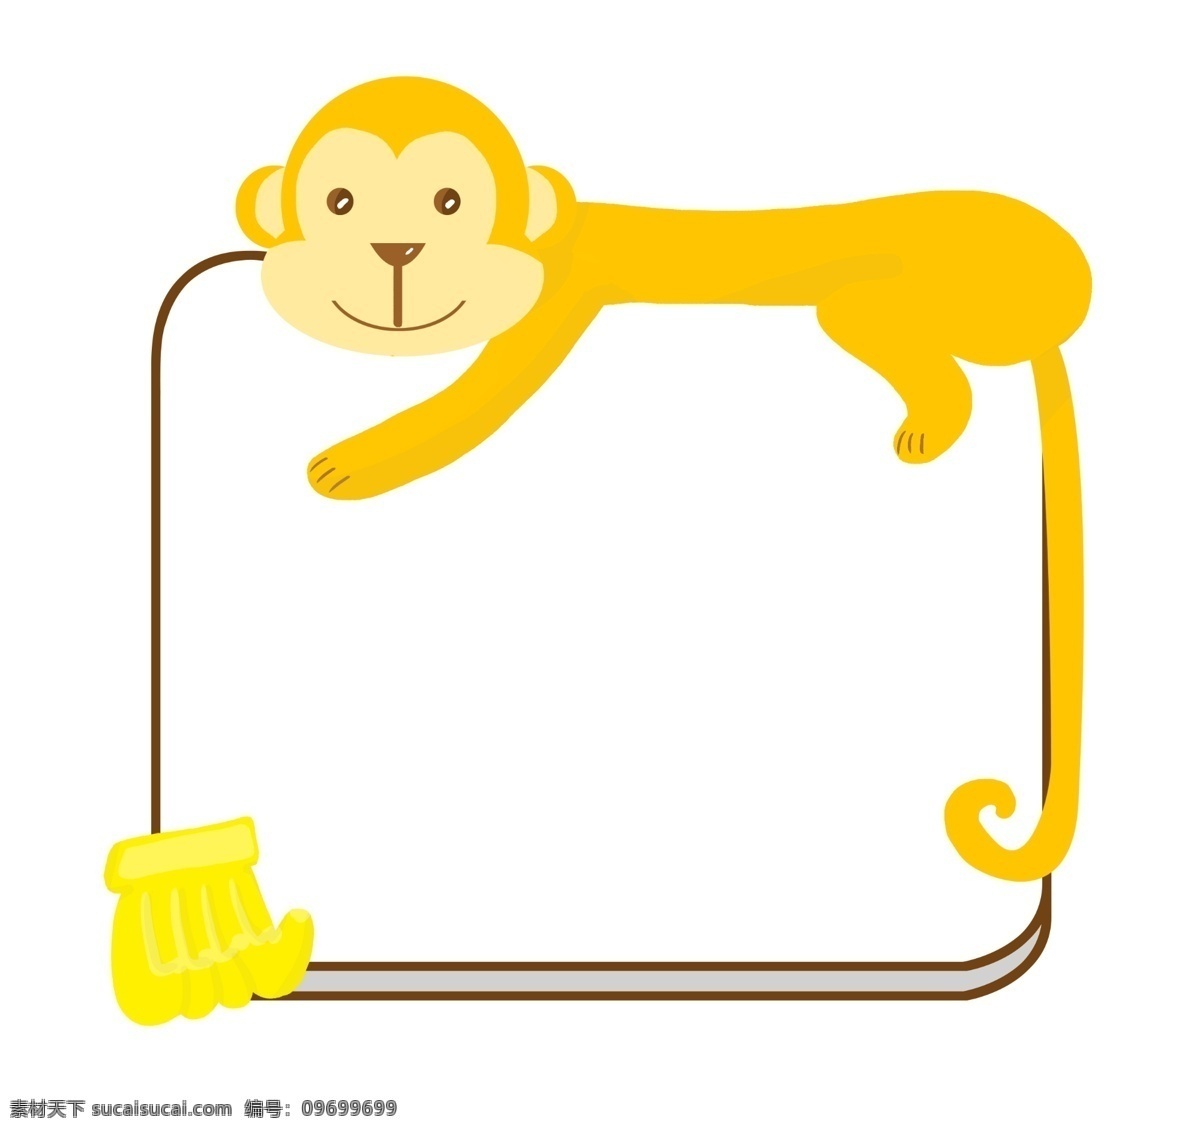 手绘 猴子 边框 插画 香蕉 手绘边框 线条边框 插图 猴子边框 黄色猴子 猴子插画 香蕉插图